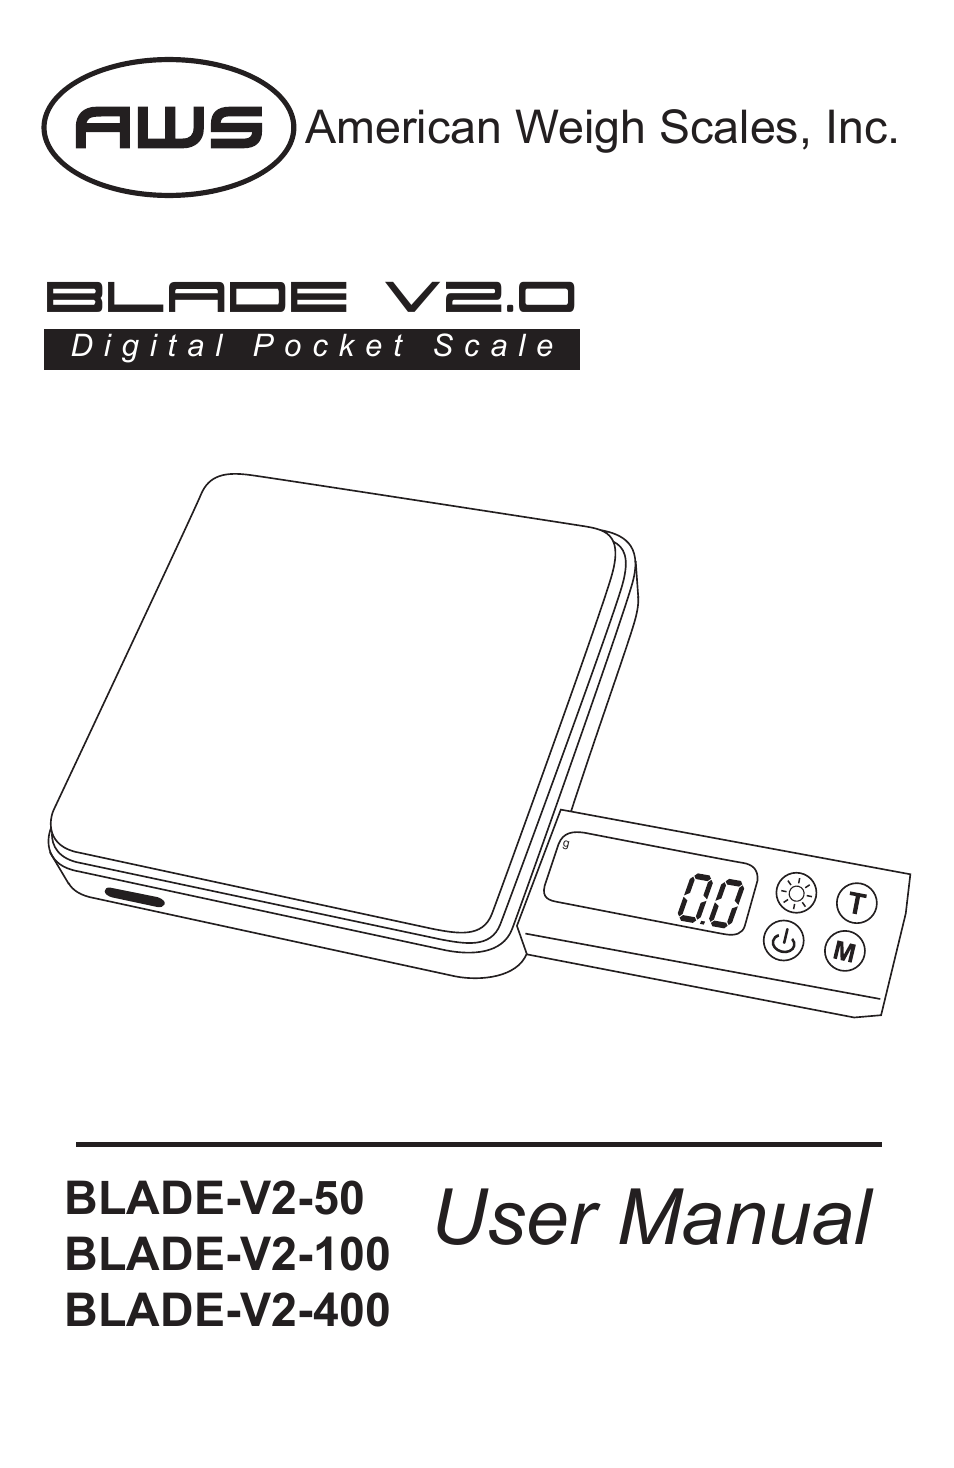 Blade-V2-400